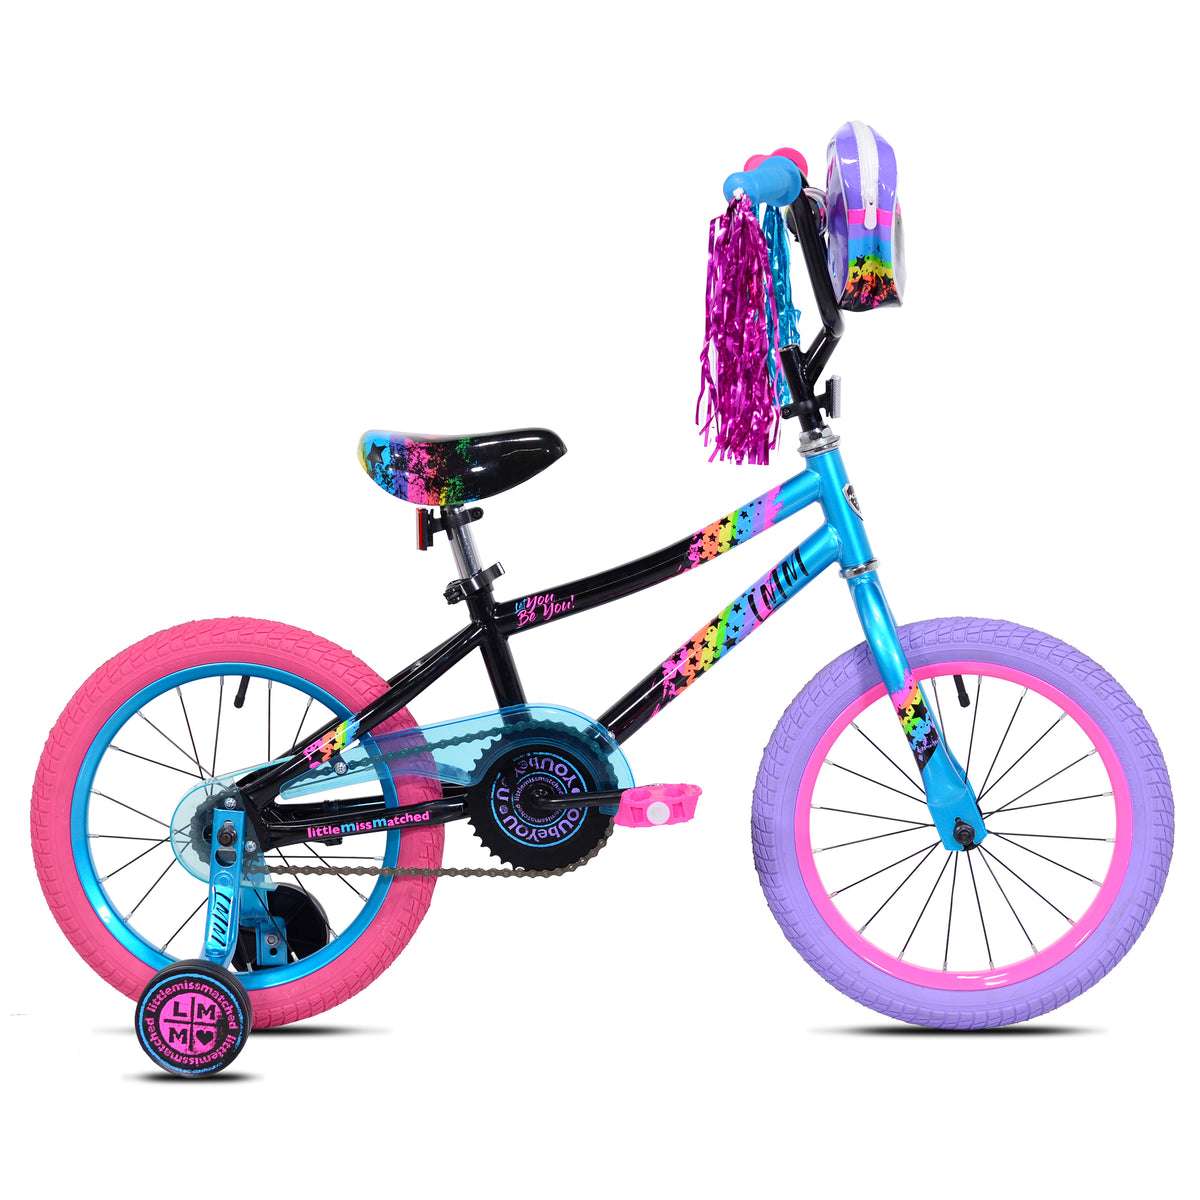 18" LittleMissMatched® Let You Be You | BMX Bike for Kids Ages 5-8